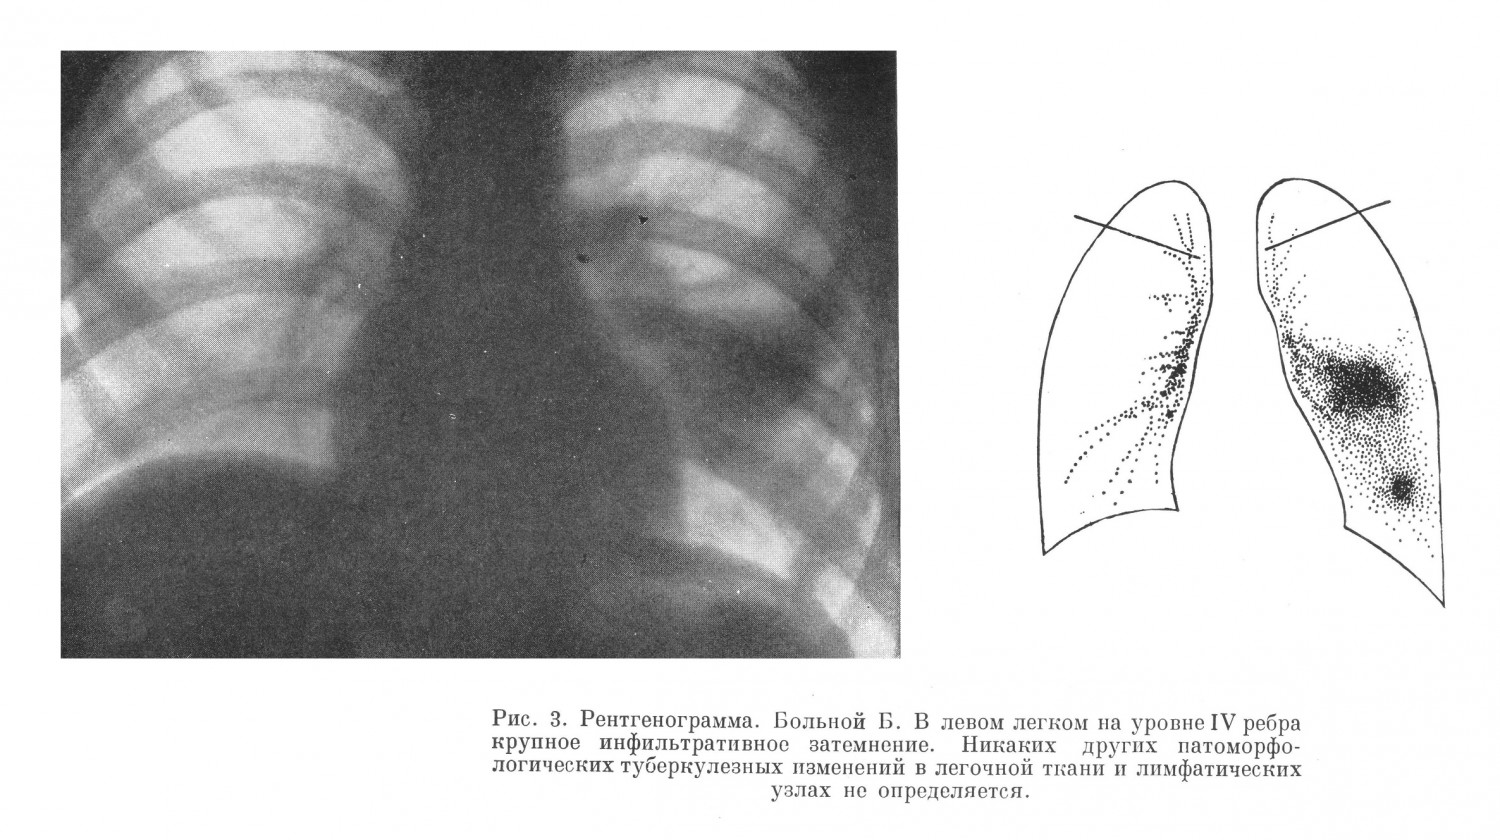 Рентгенограмма туберкулез легких